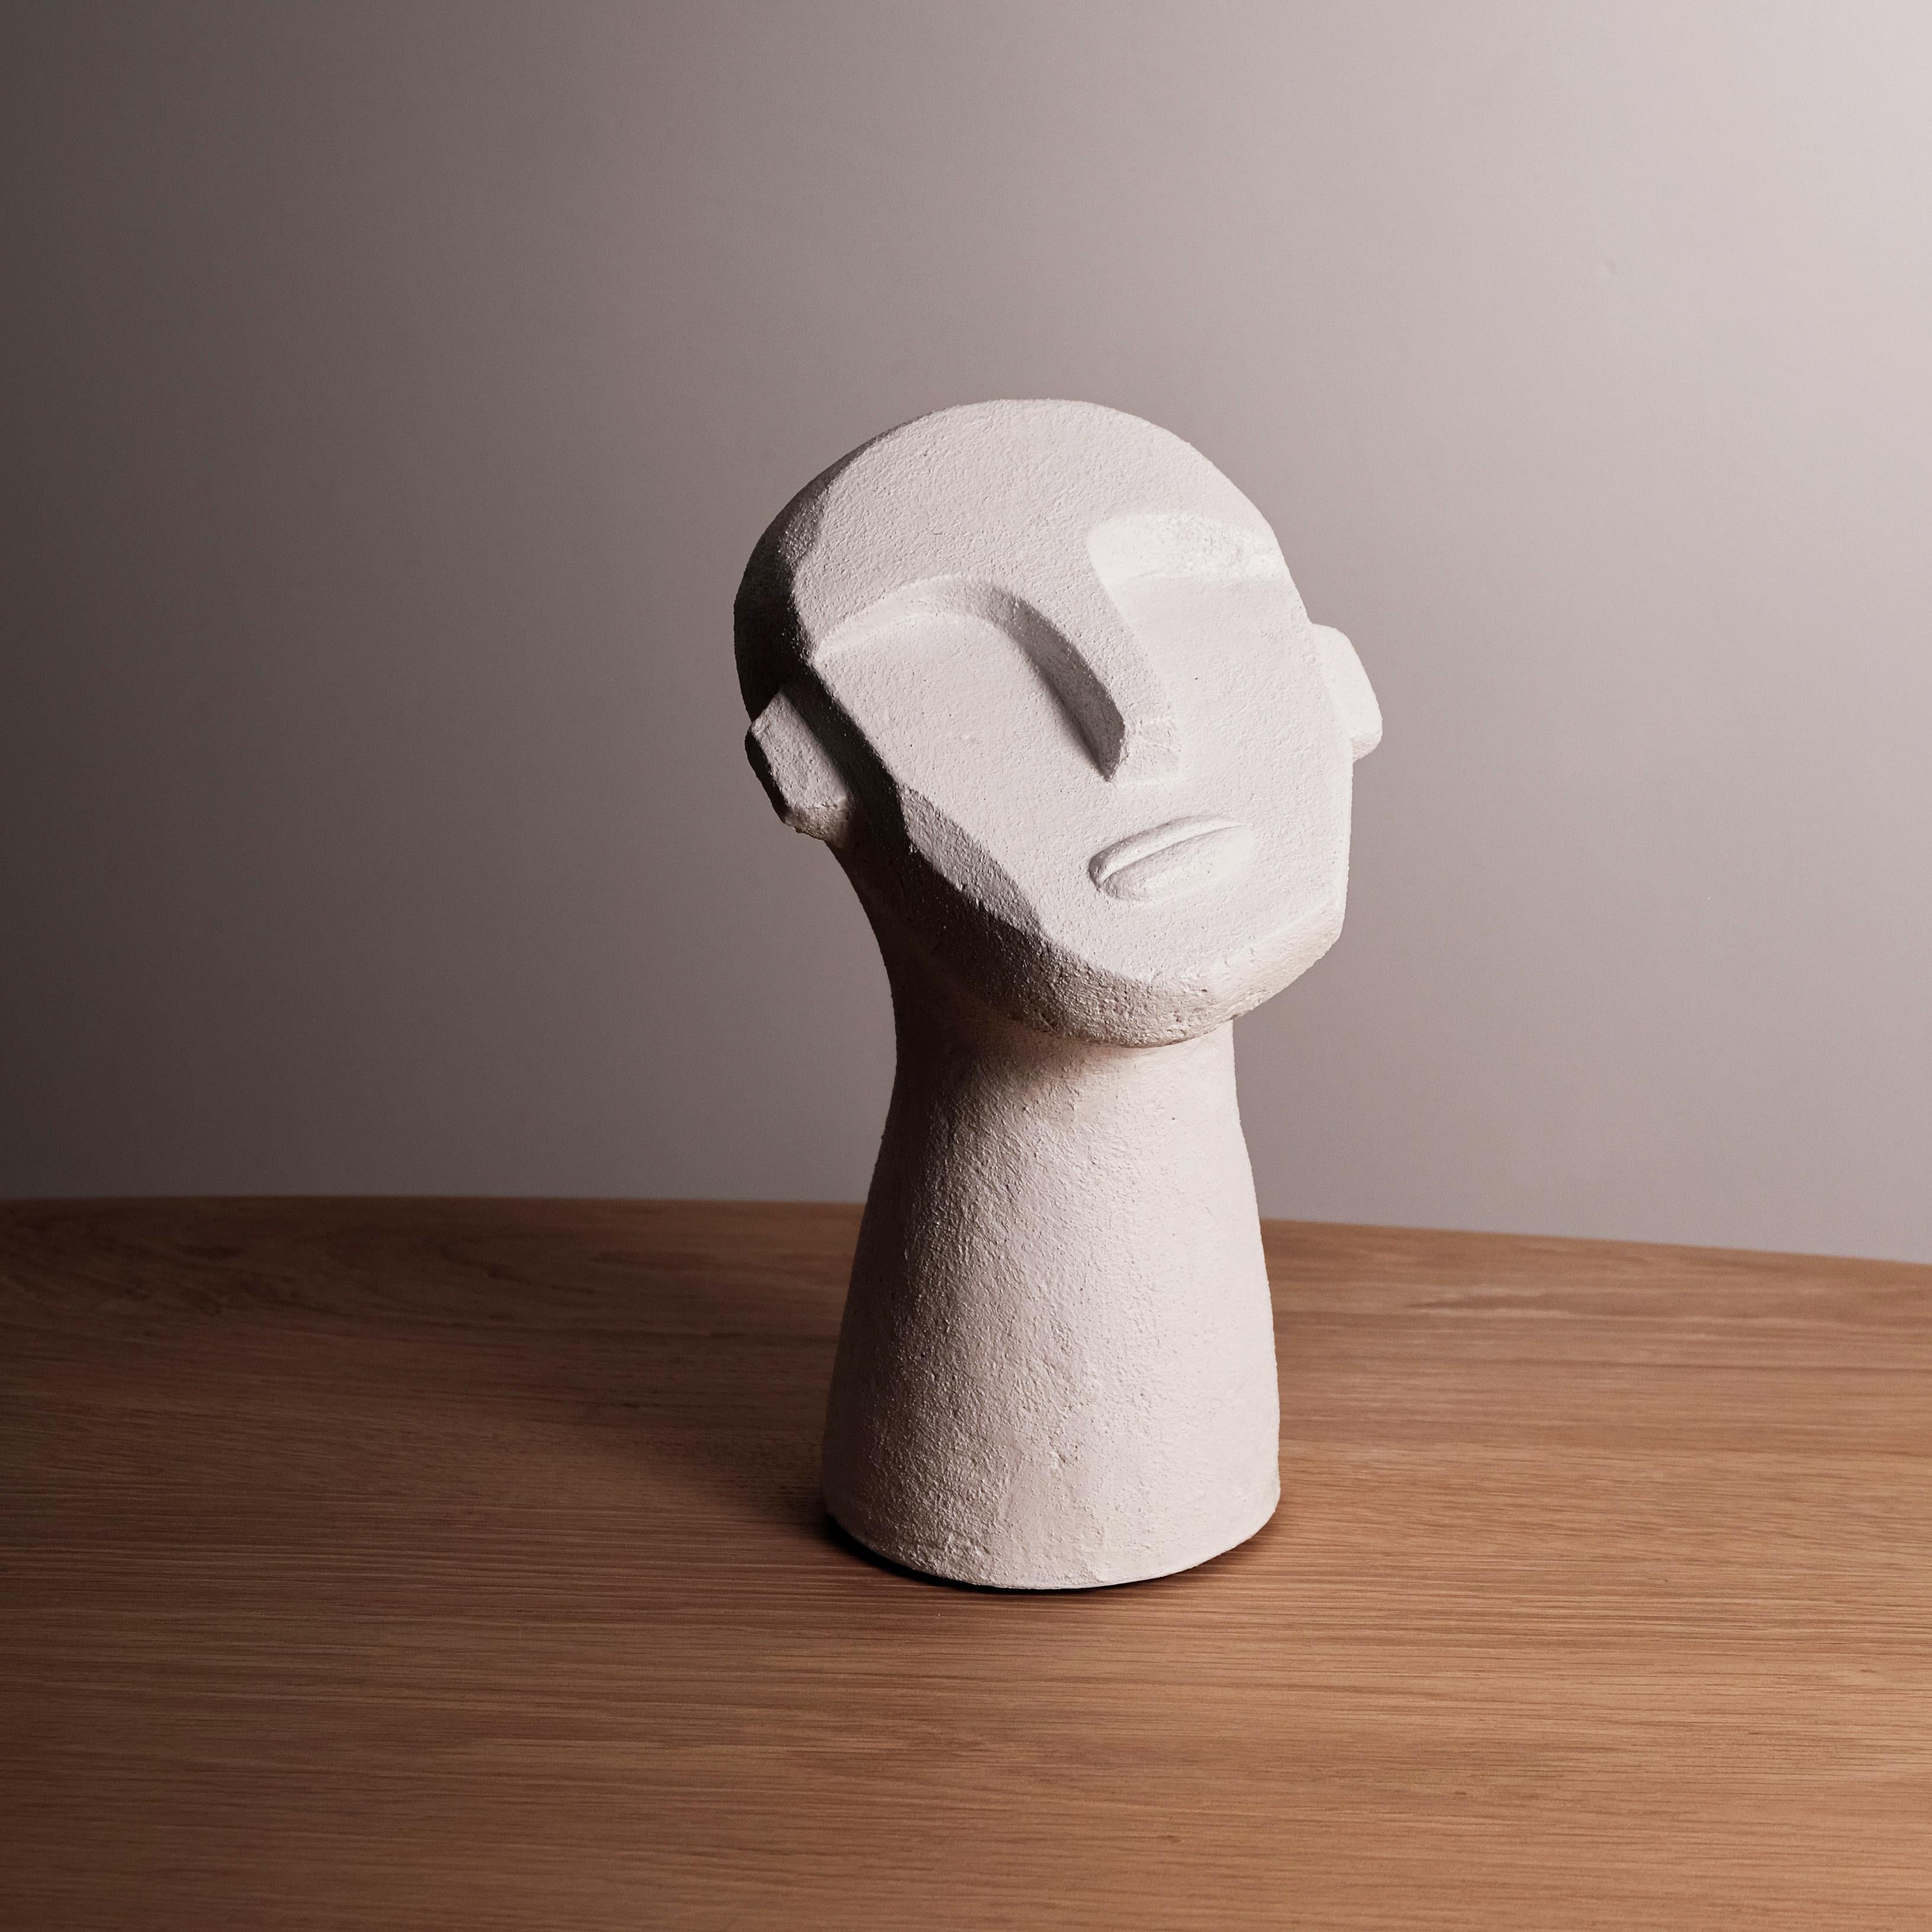 Sculpture de table en forme de buste de style brutaliste, moulée en ciment blanc.